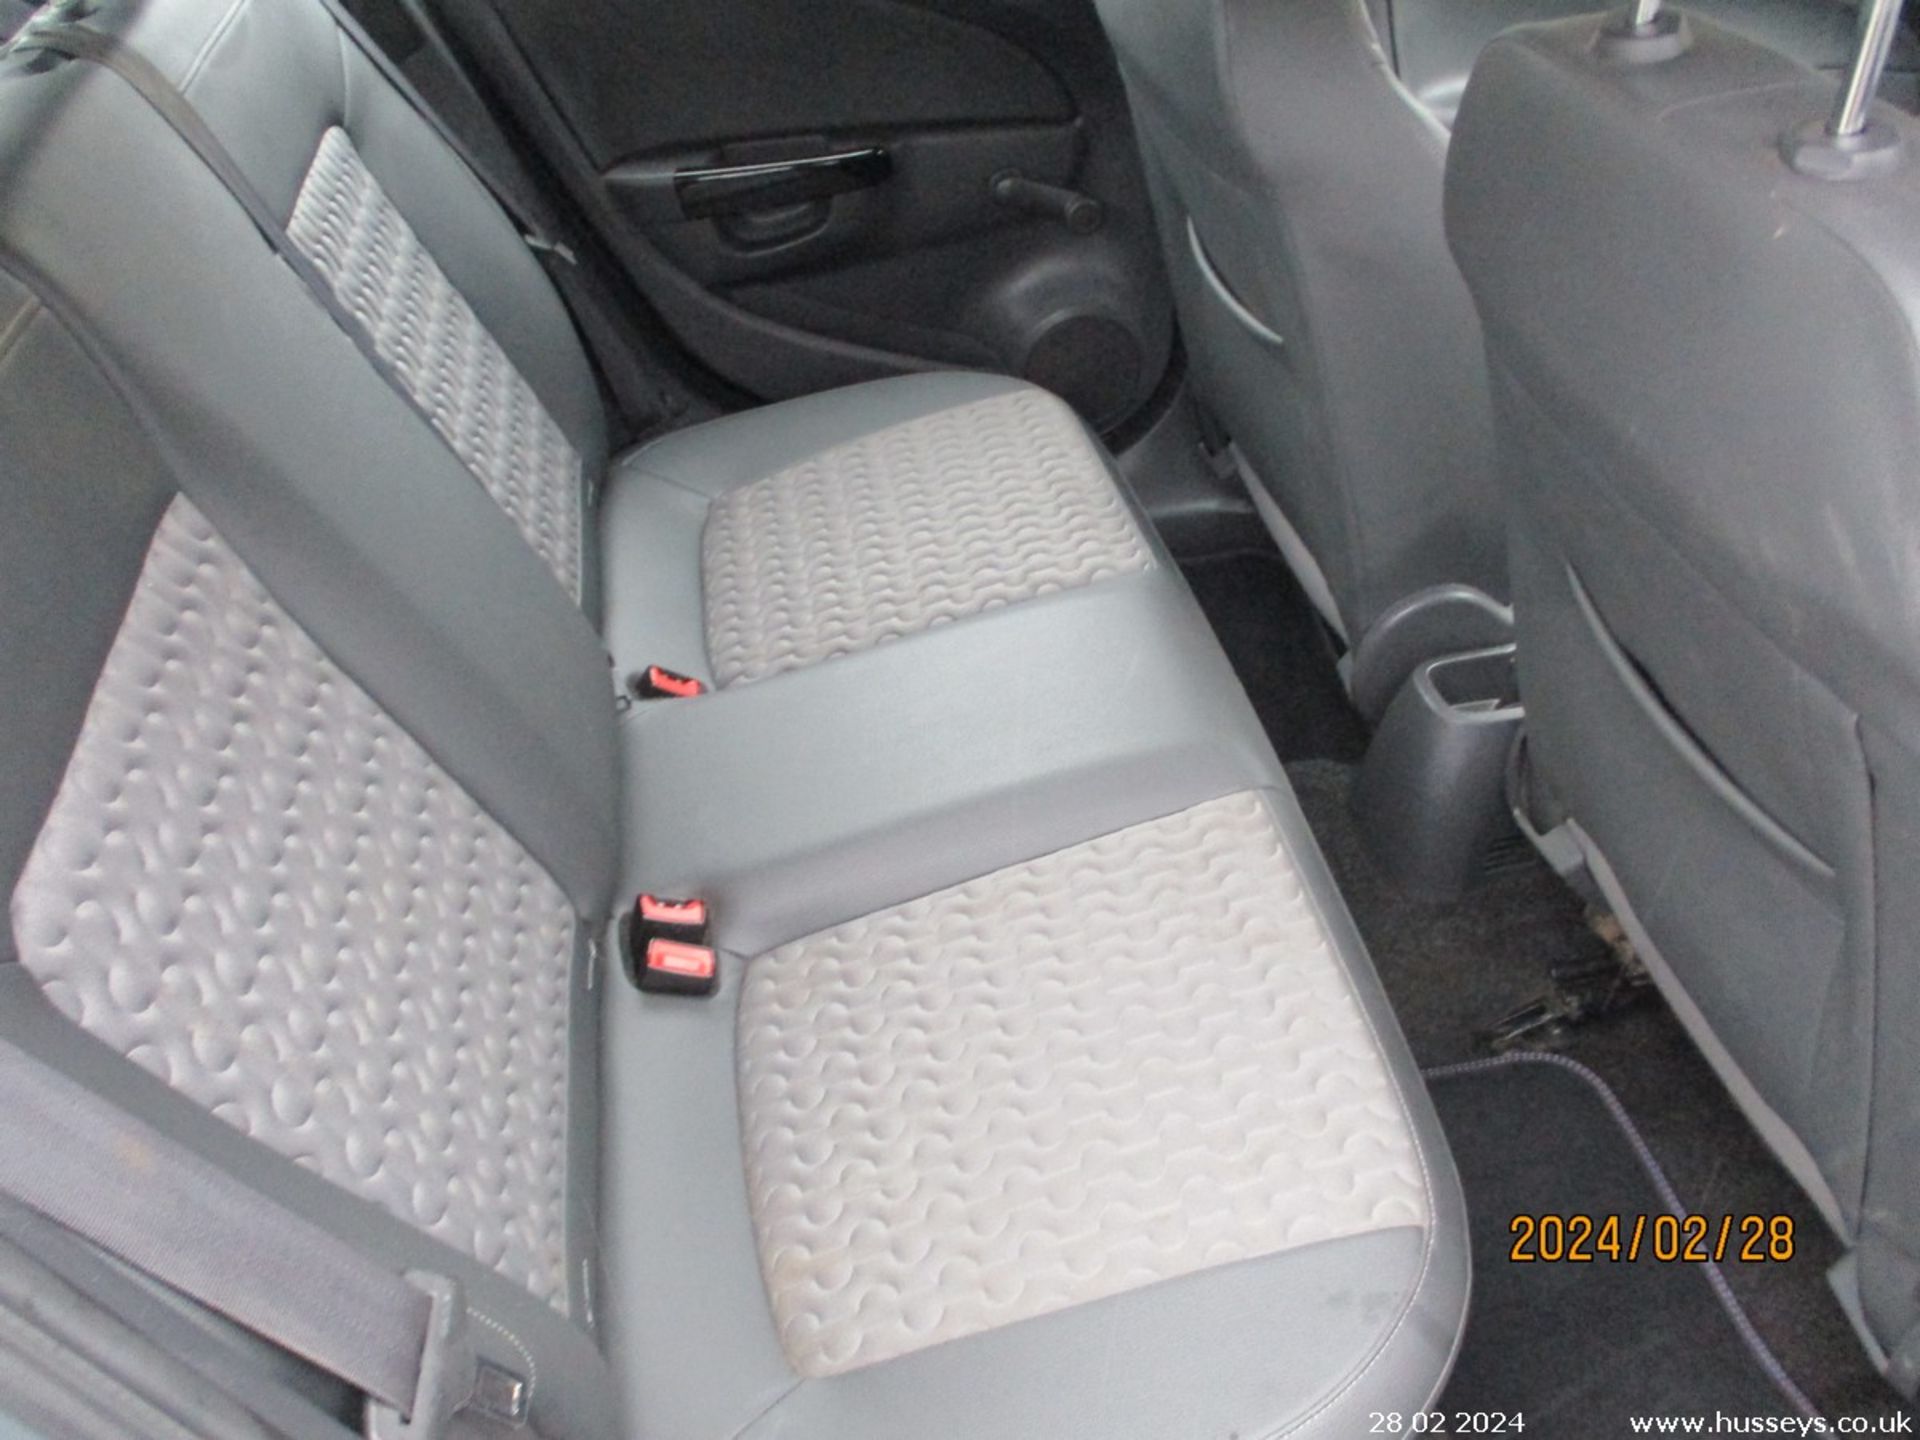 14/64 VAUXHALL CORSA SE - 1398cc 5dr Hatchback (Silver, 122k) - Image 14 of 17